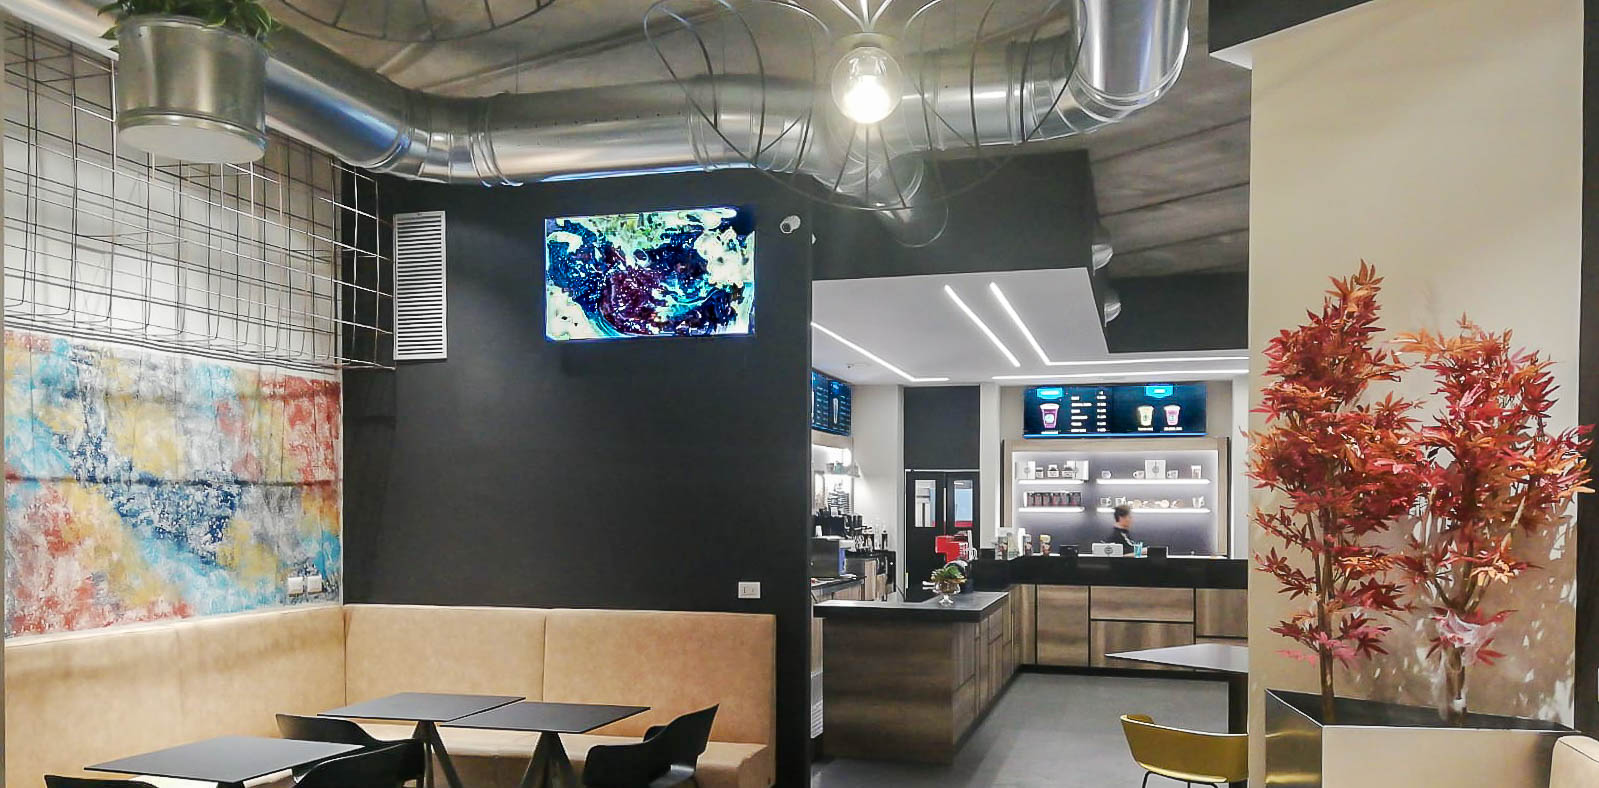 Videowall Samsung Smart Signage con menu prodotti installati a parete all'interno del bar caffetteria